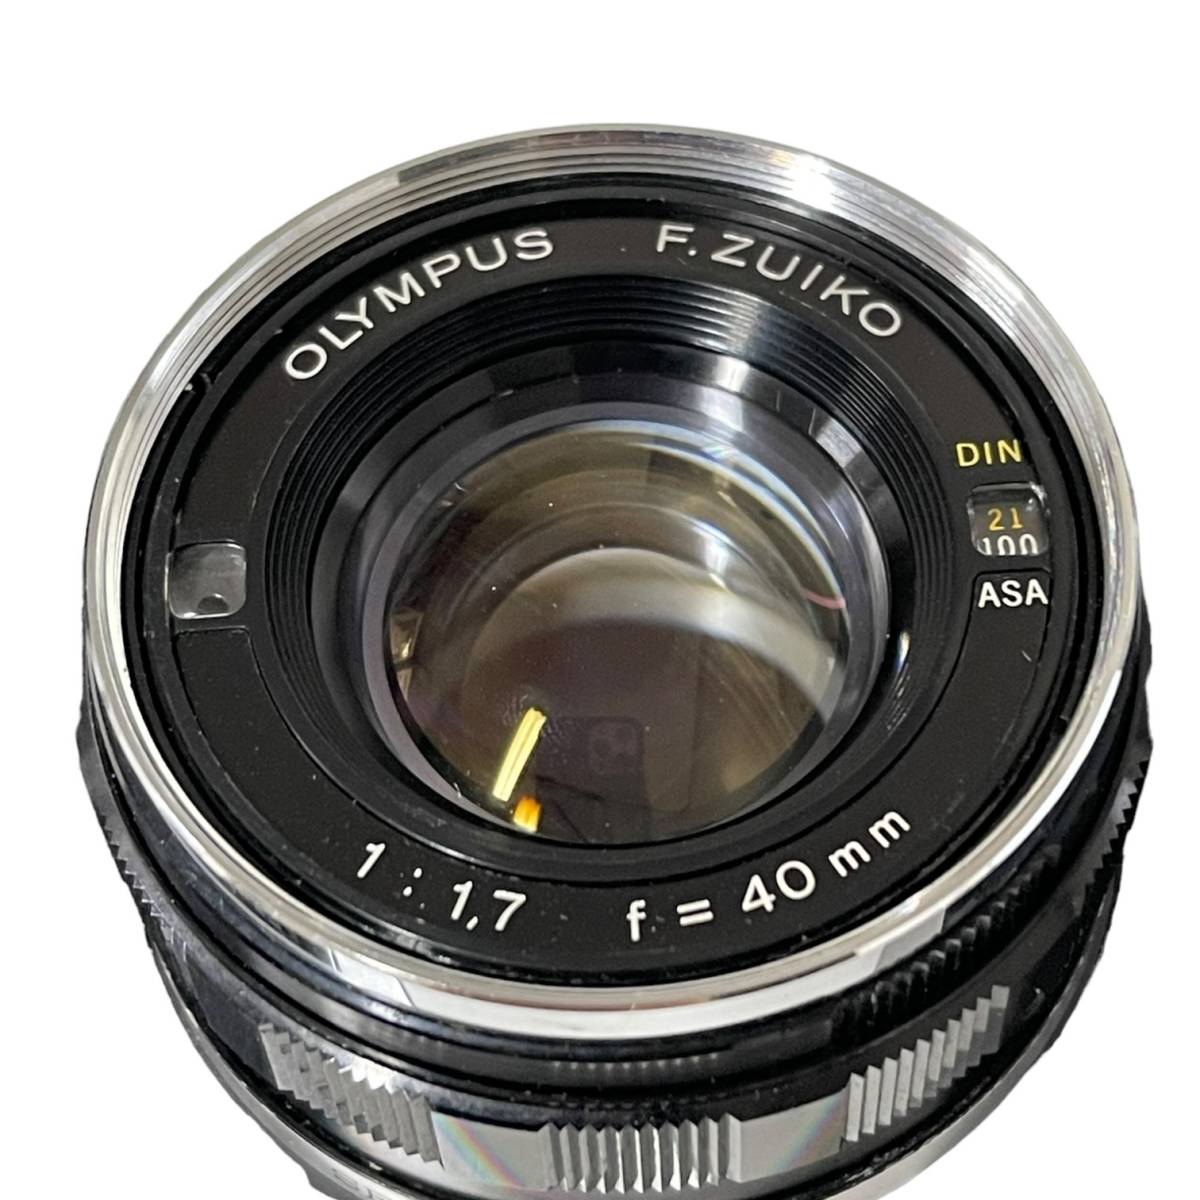 【ジャンク品】 OLYMPUS 35DC オリンパス レンズ: OLYMPUS F.ZUIKO 1:1,7 f=40mm 箱無し 本体のみ hiL5293ROの画像3